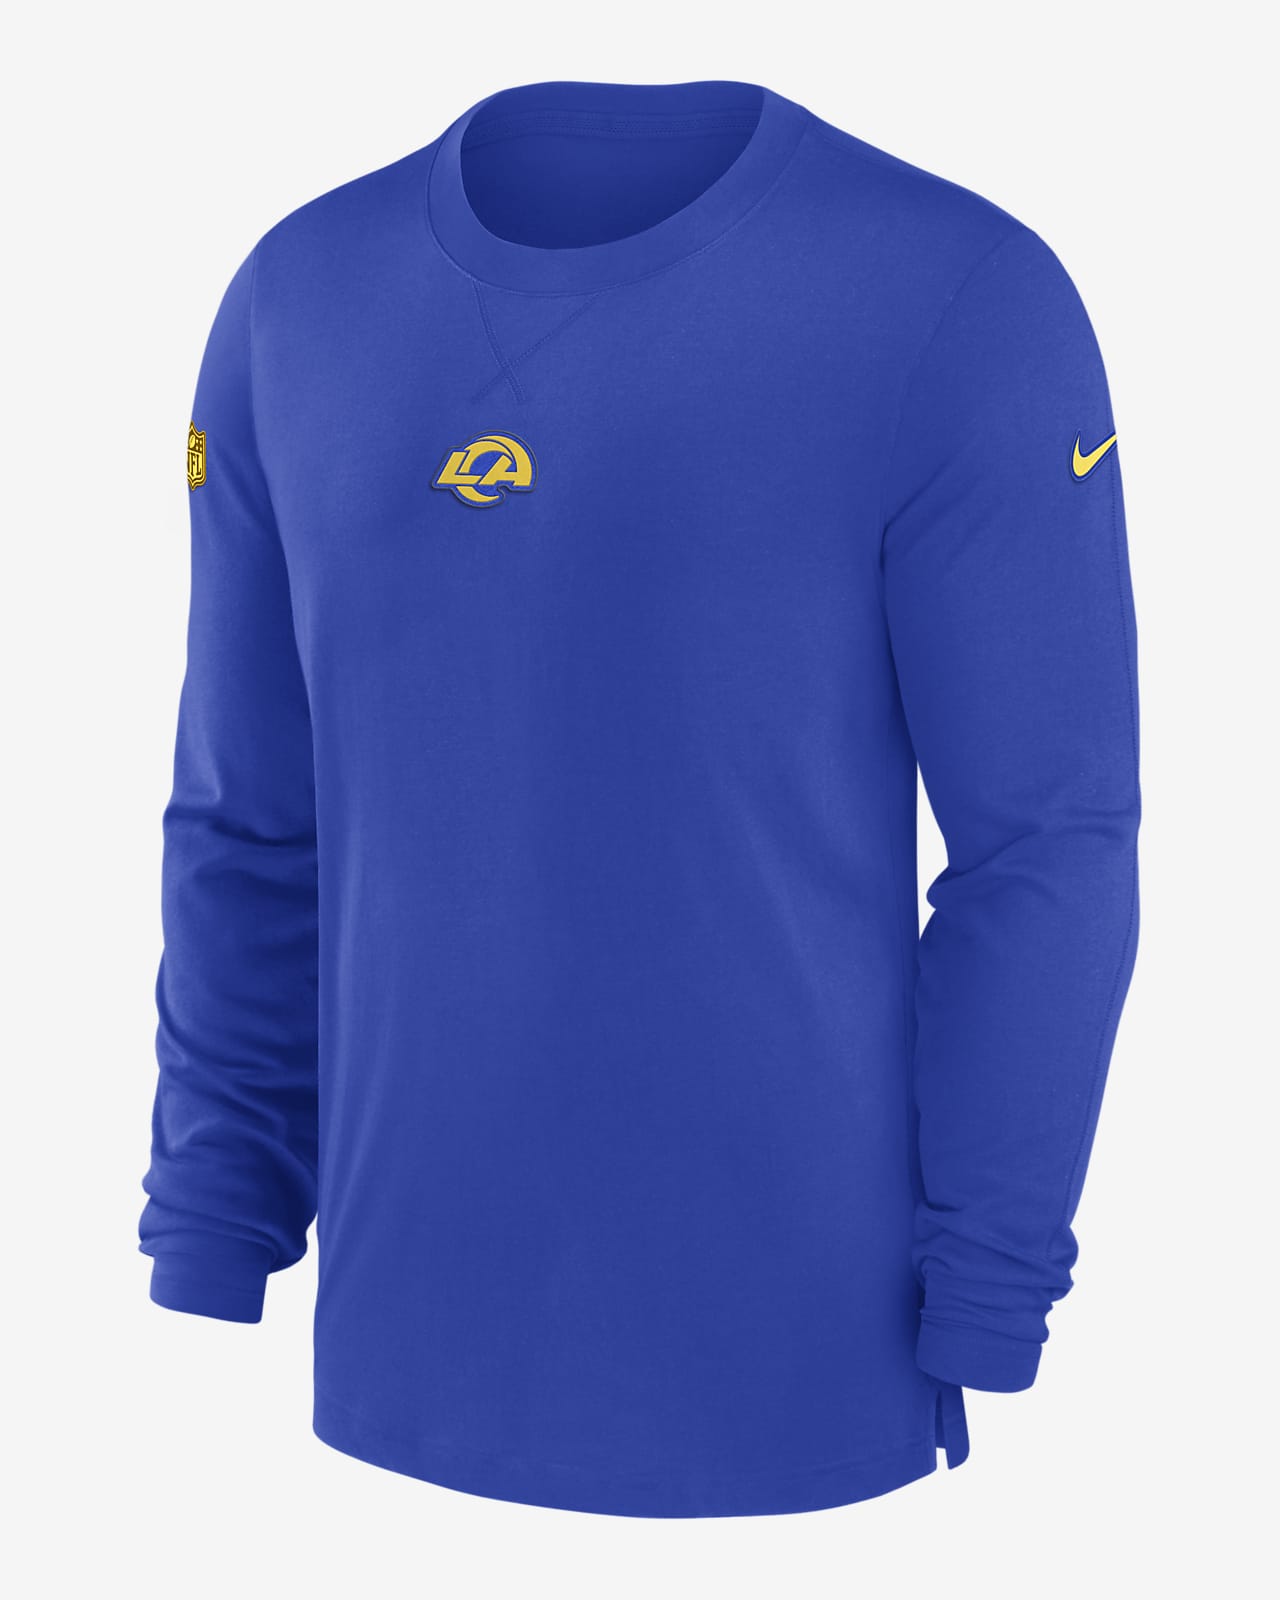 Los Angeles Rams Sideline Men's Nike Dri-FIT NFL Long-Sleeve Top.